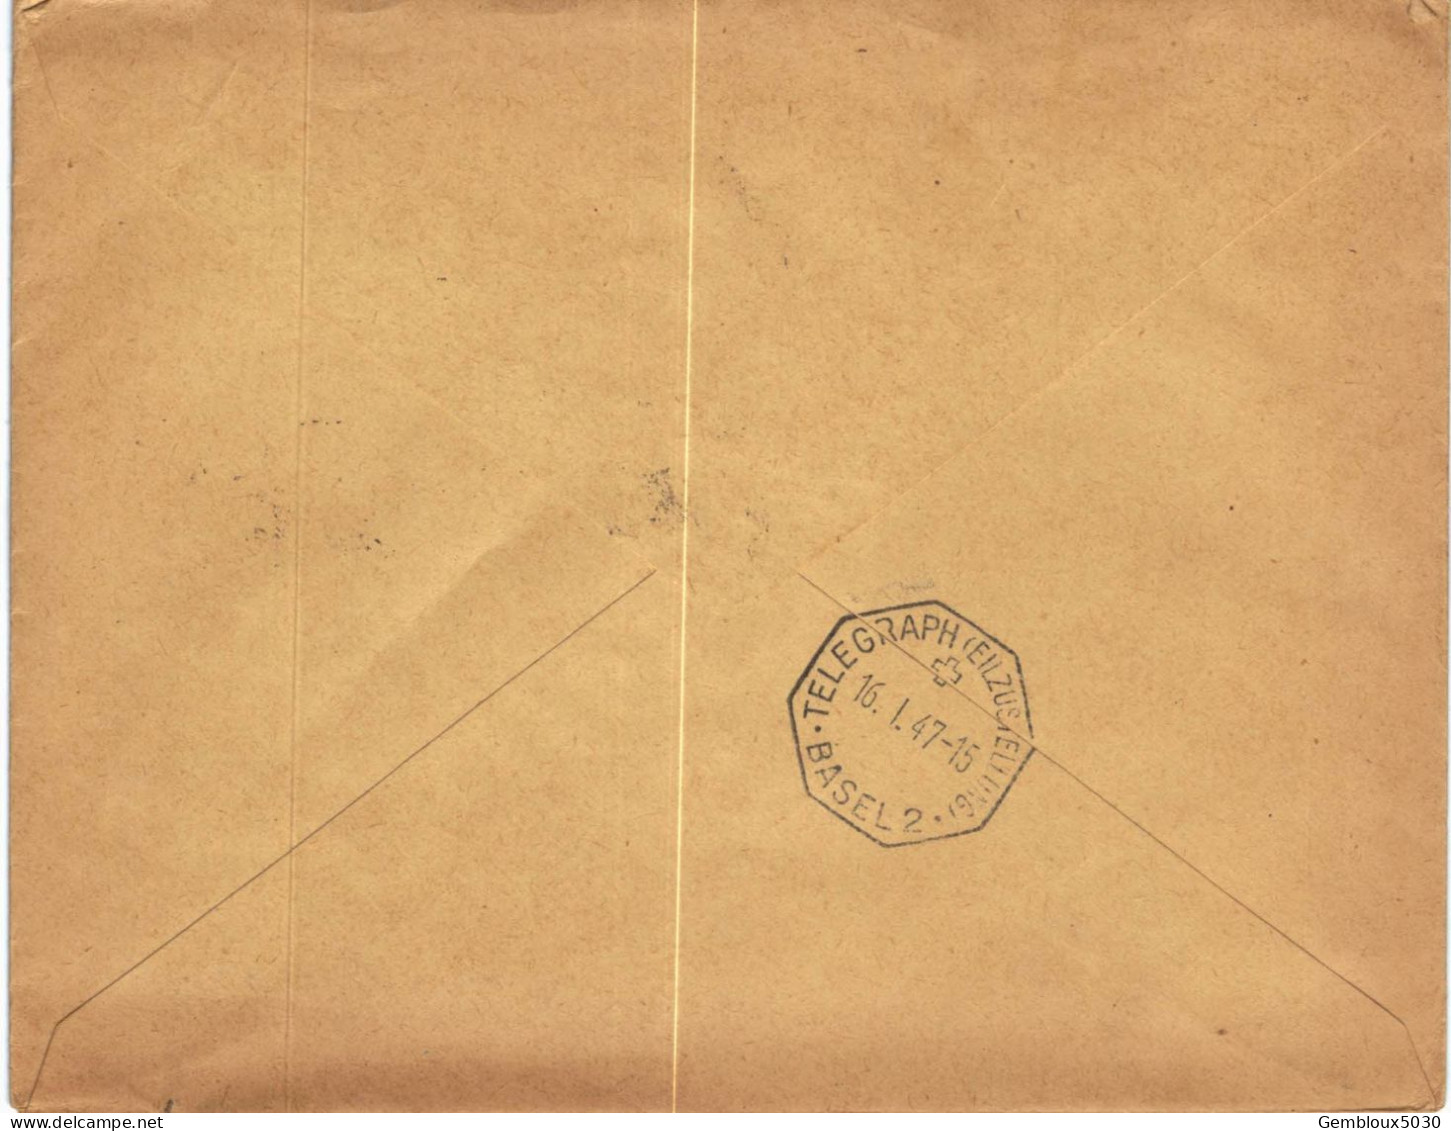 (01) Belgique 1 X N° 419 + 2 X 422 + 2 X 696  Sur Enveloppe écrite De Bruxelles Vers Bâle Suisse En Express - 1935-1949 Sellos Pequeños Del Estado